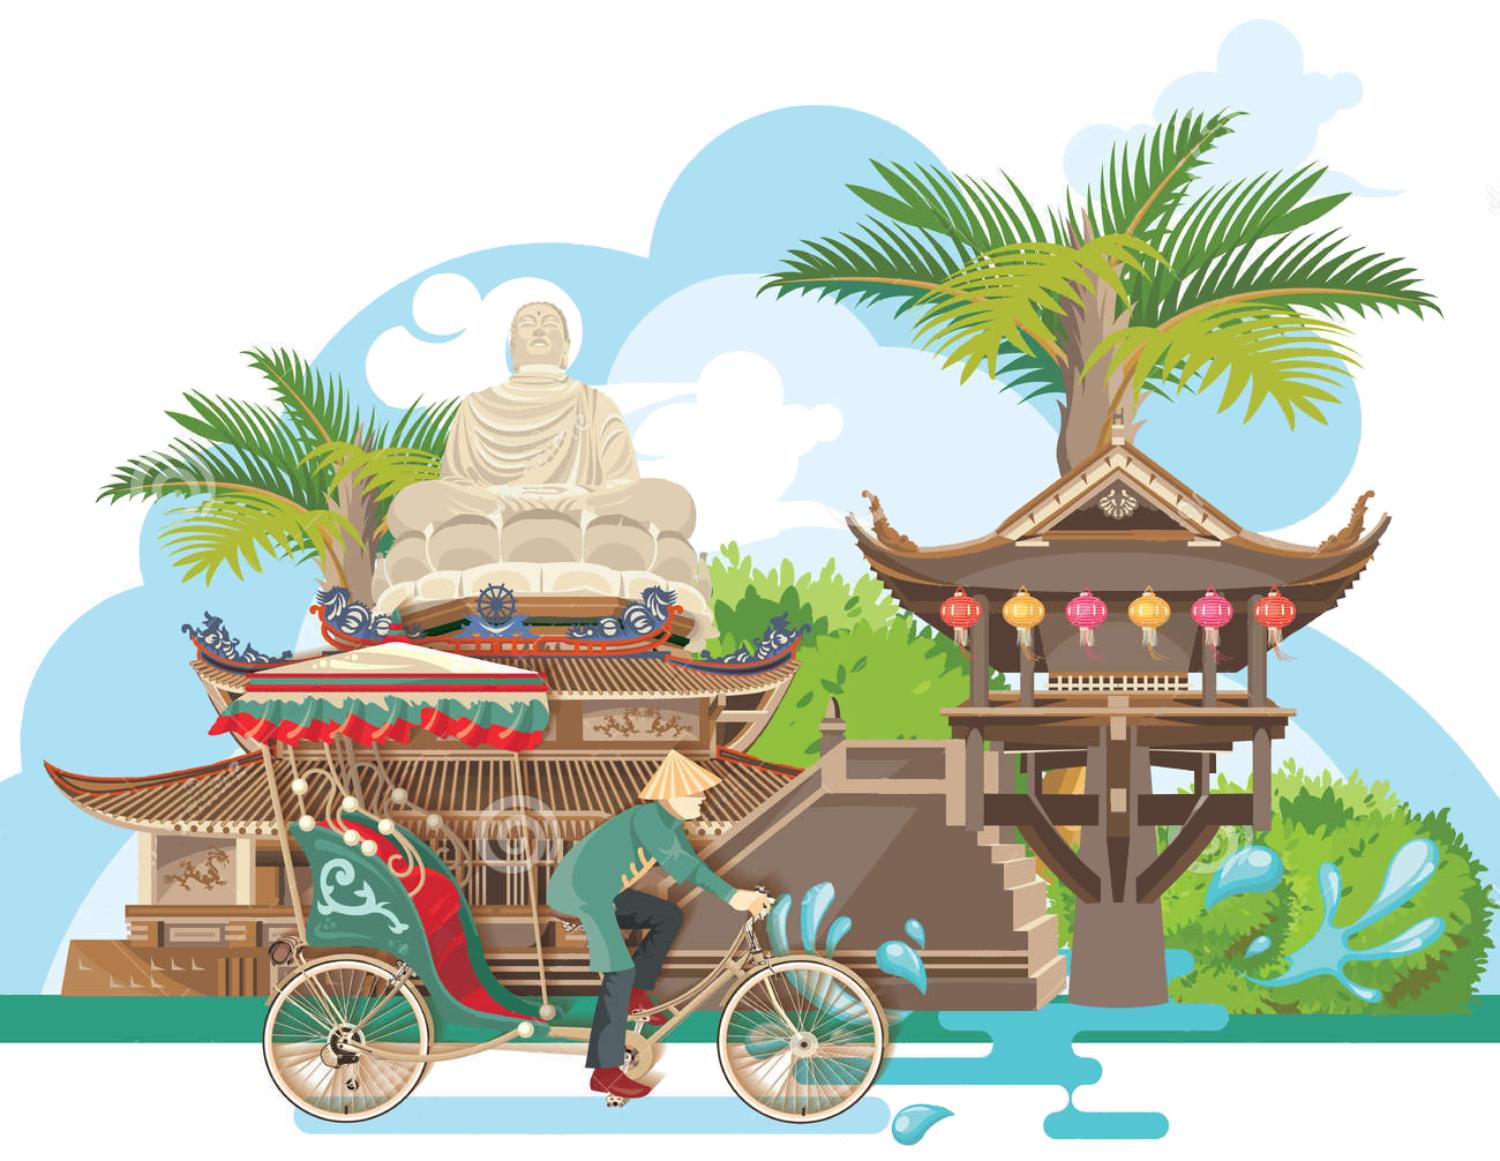 Tài nguyên Du lịch là gì? Tổng quan Tài nguyên Du lịch Việt Nam